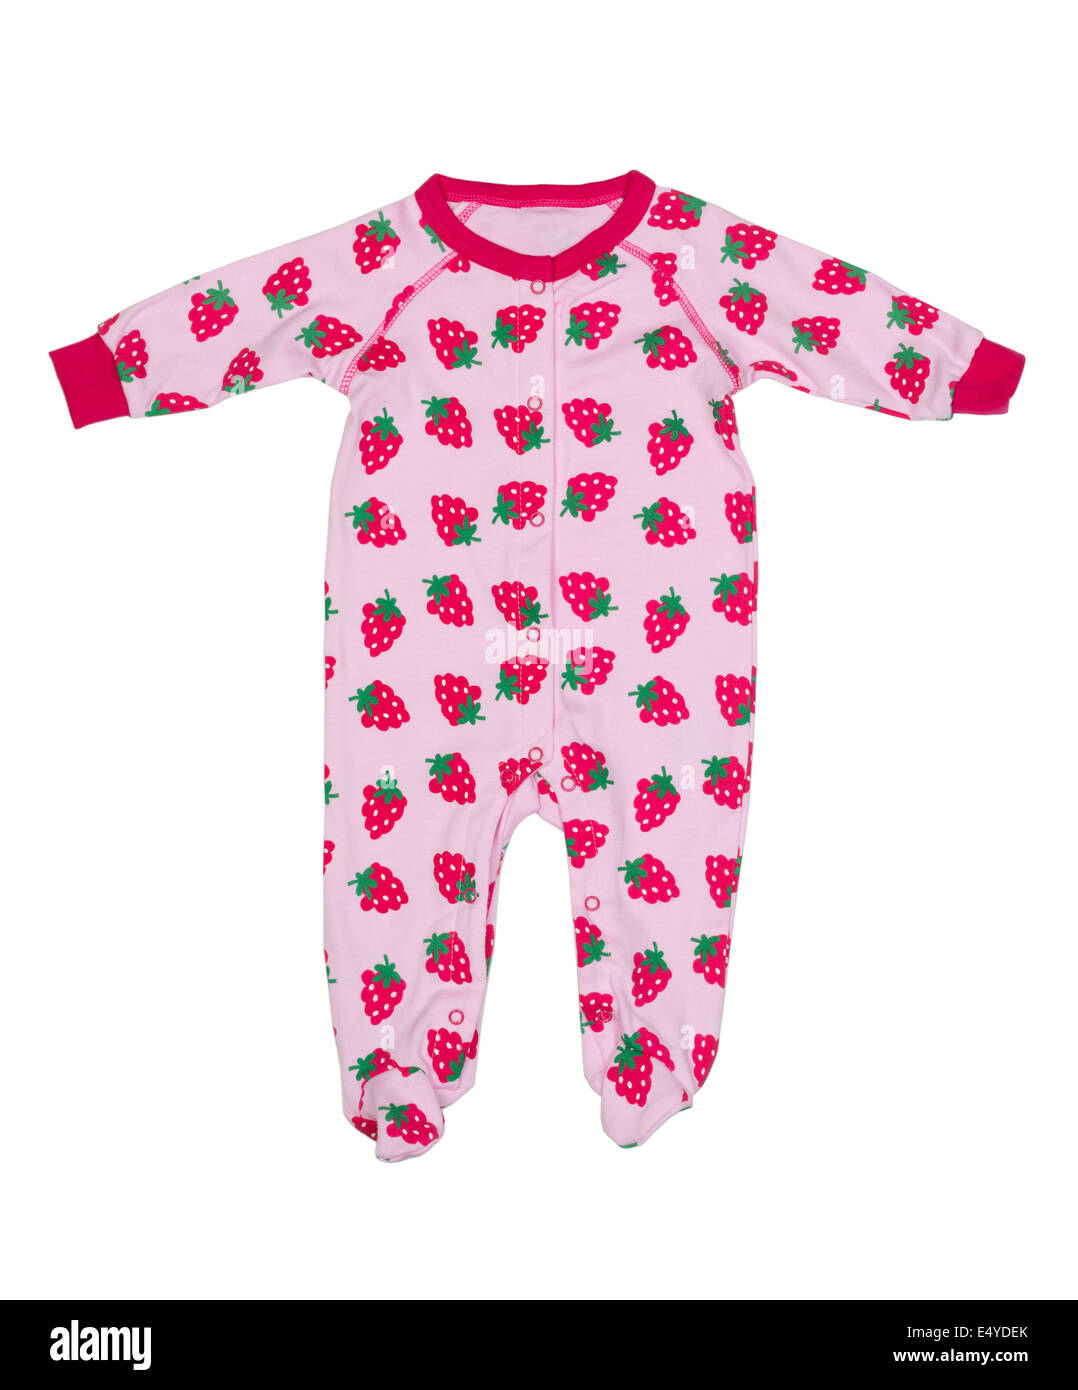 Kleidung für Neugeborene mit Erdbeer-Muster Stockfoto